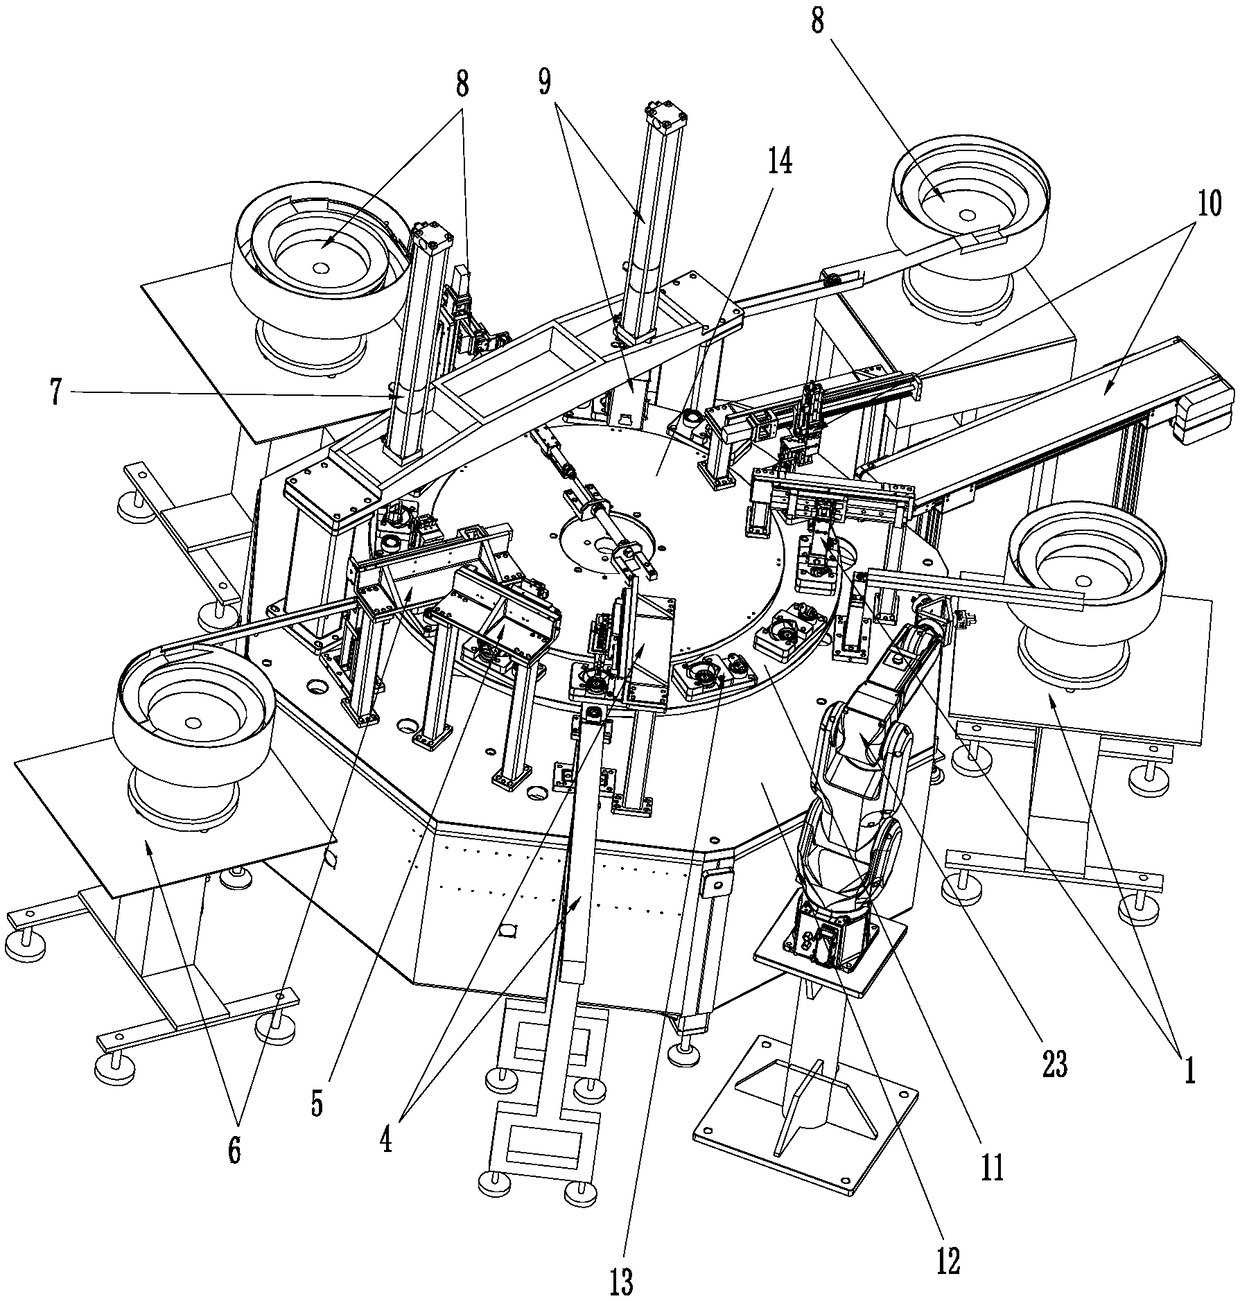 Automatic universal wheel assembling machine